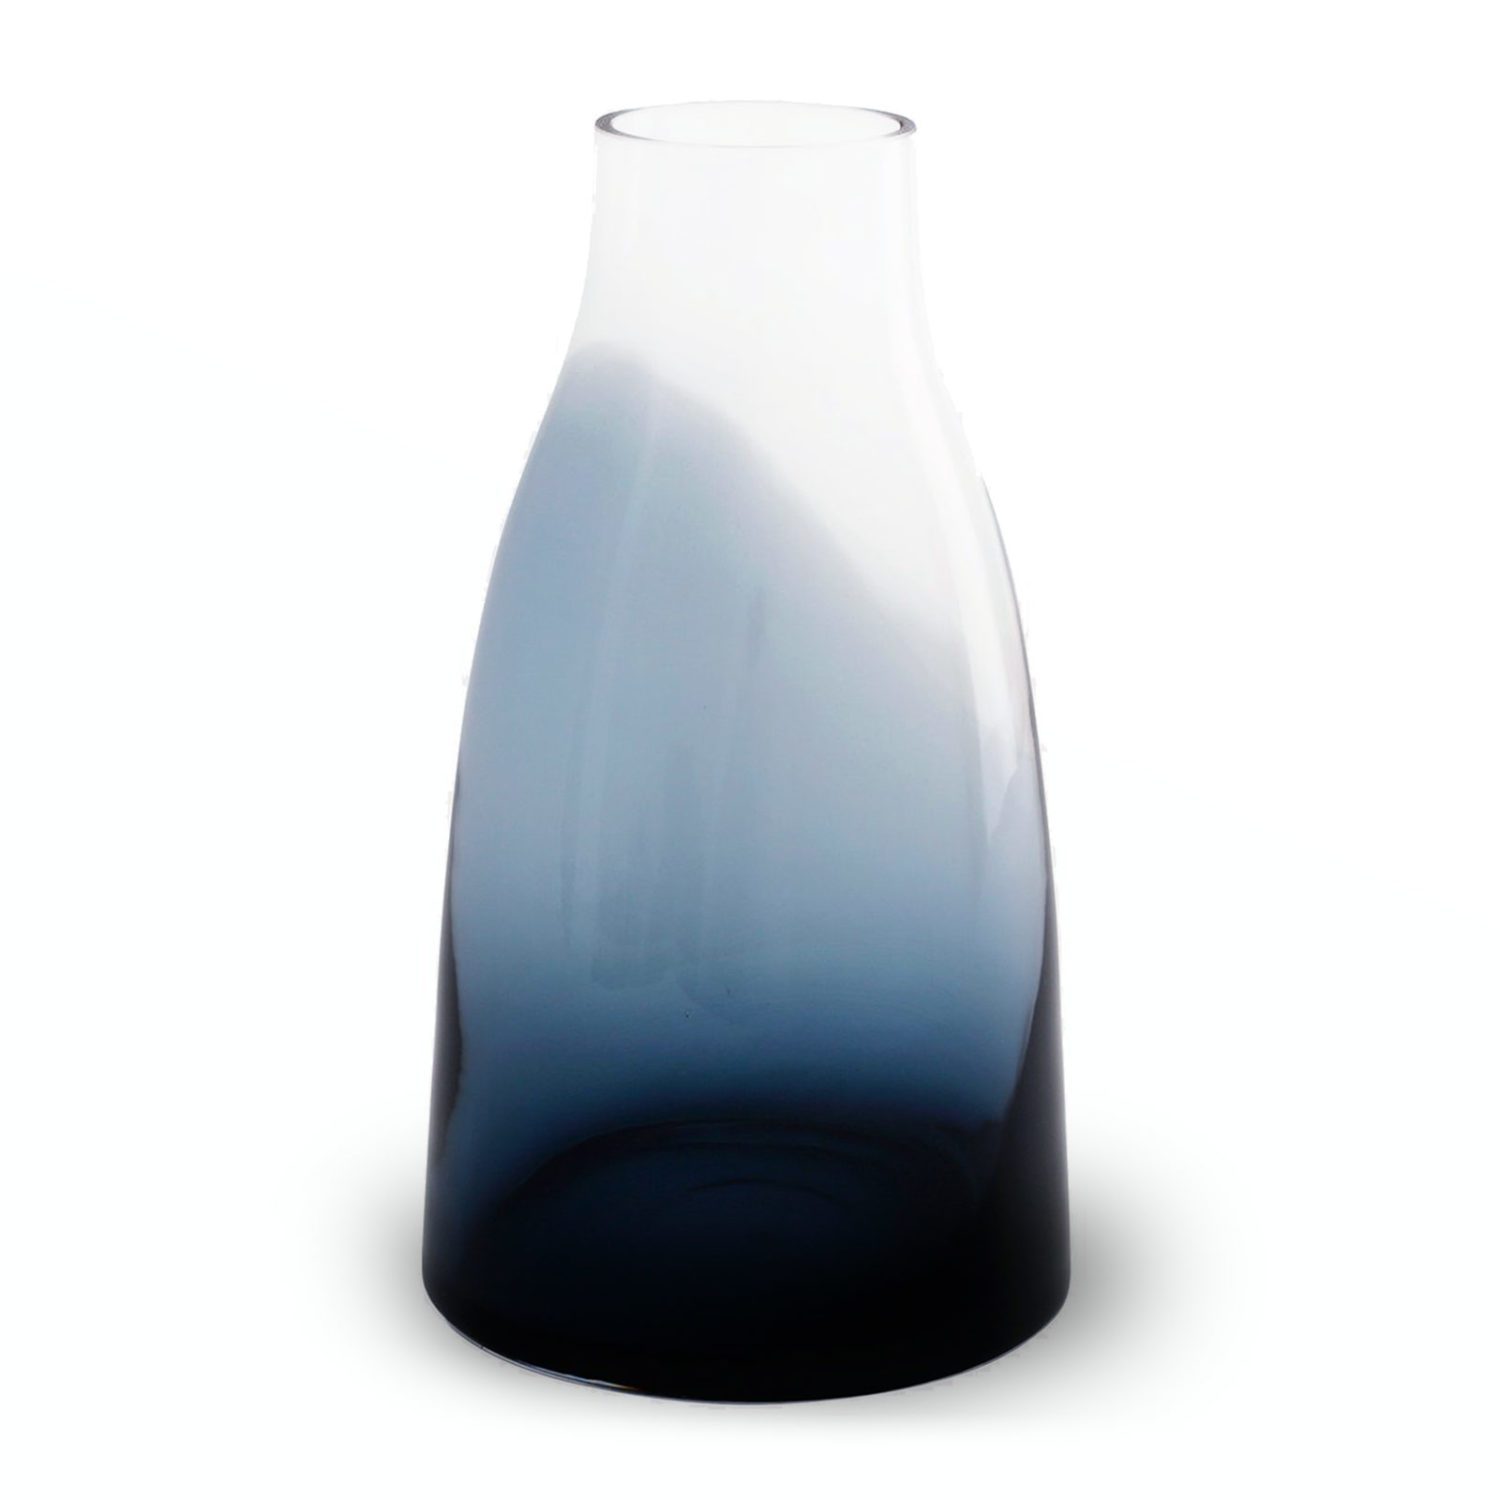 Indigo blaue Ro FLOWER Vase no. 3 bei der Boutique Danoise